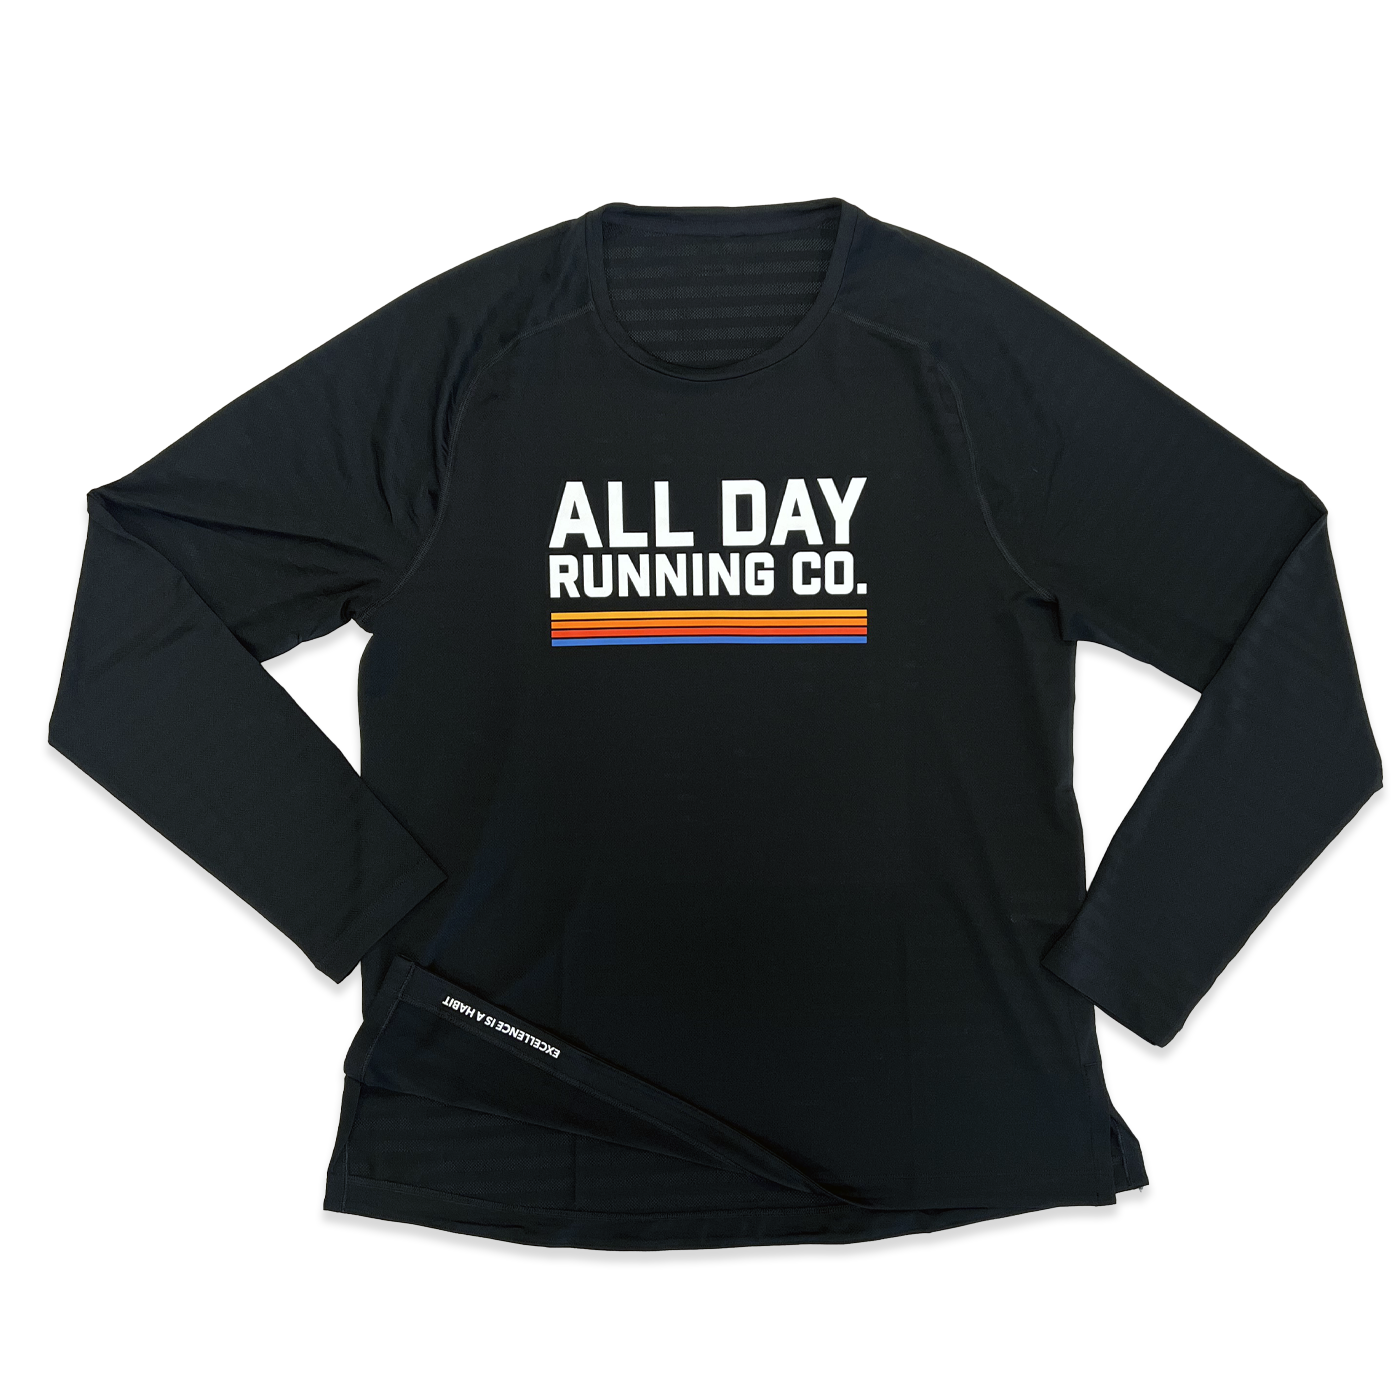 All Day x Rhône Long Sleeve Performance Shirt